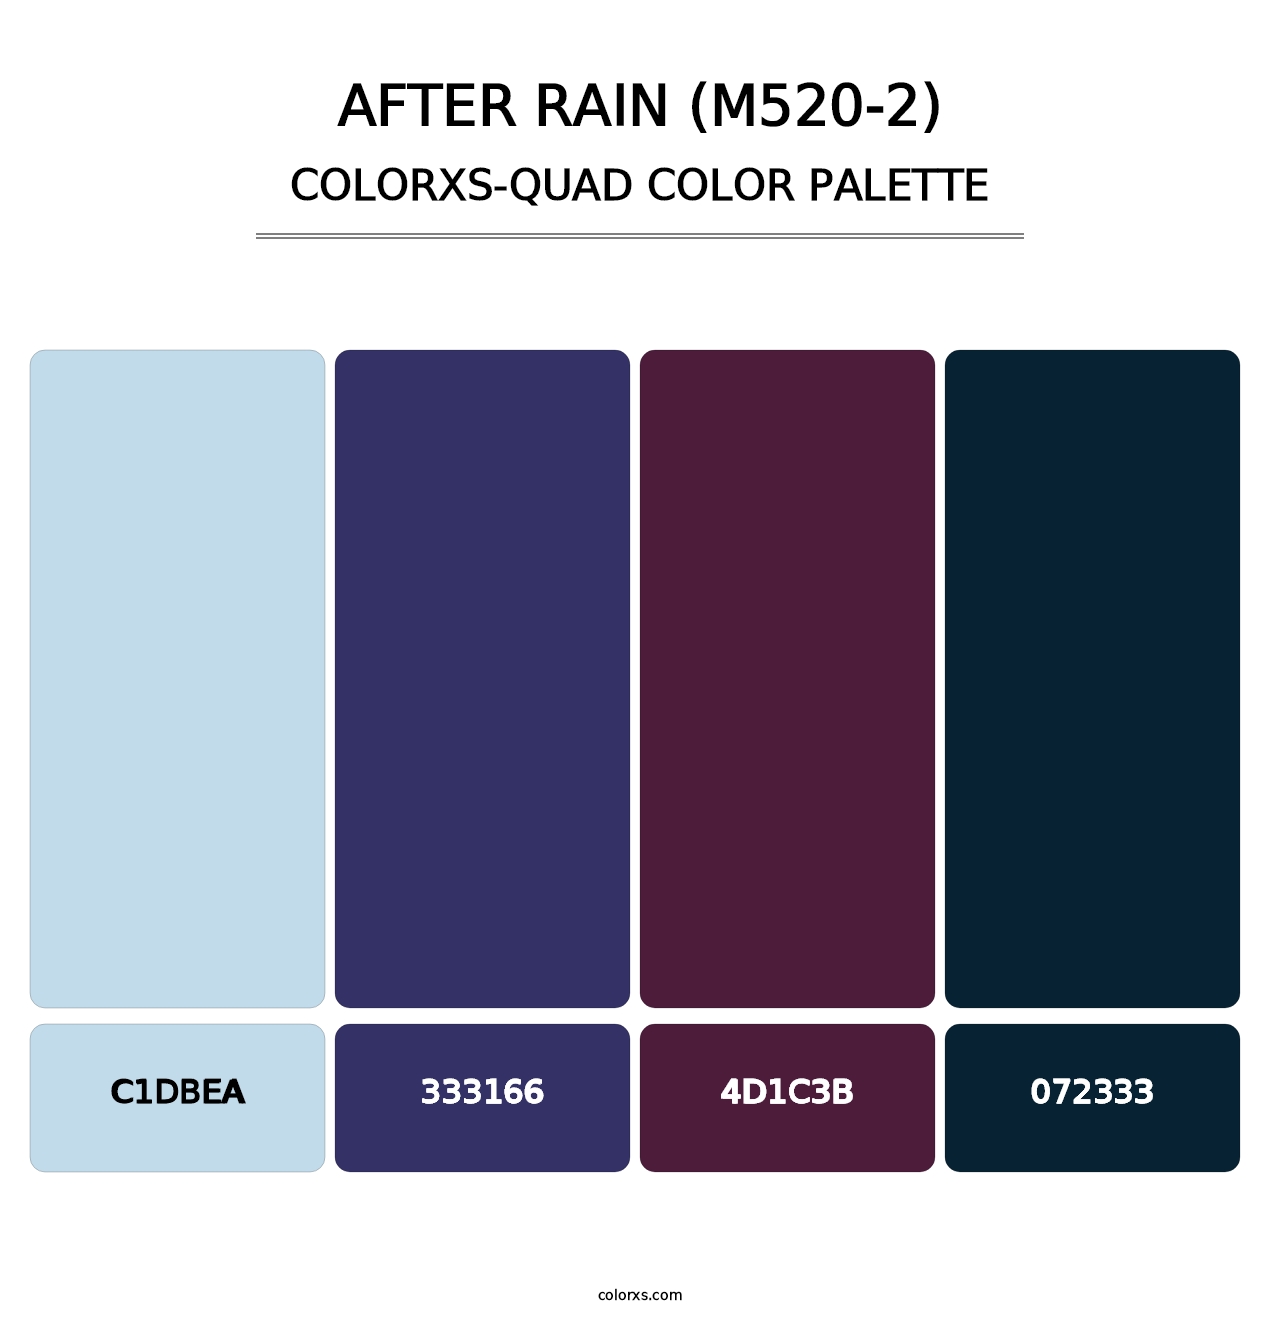 After Rain (M520-2) - Colorxs Quad Palette